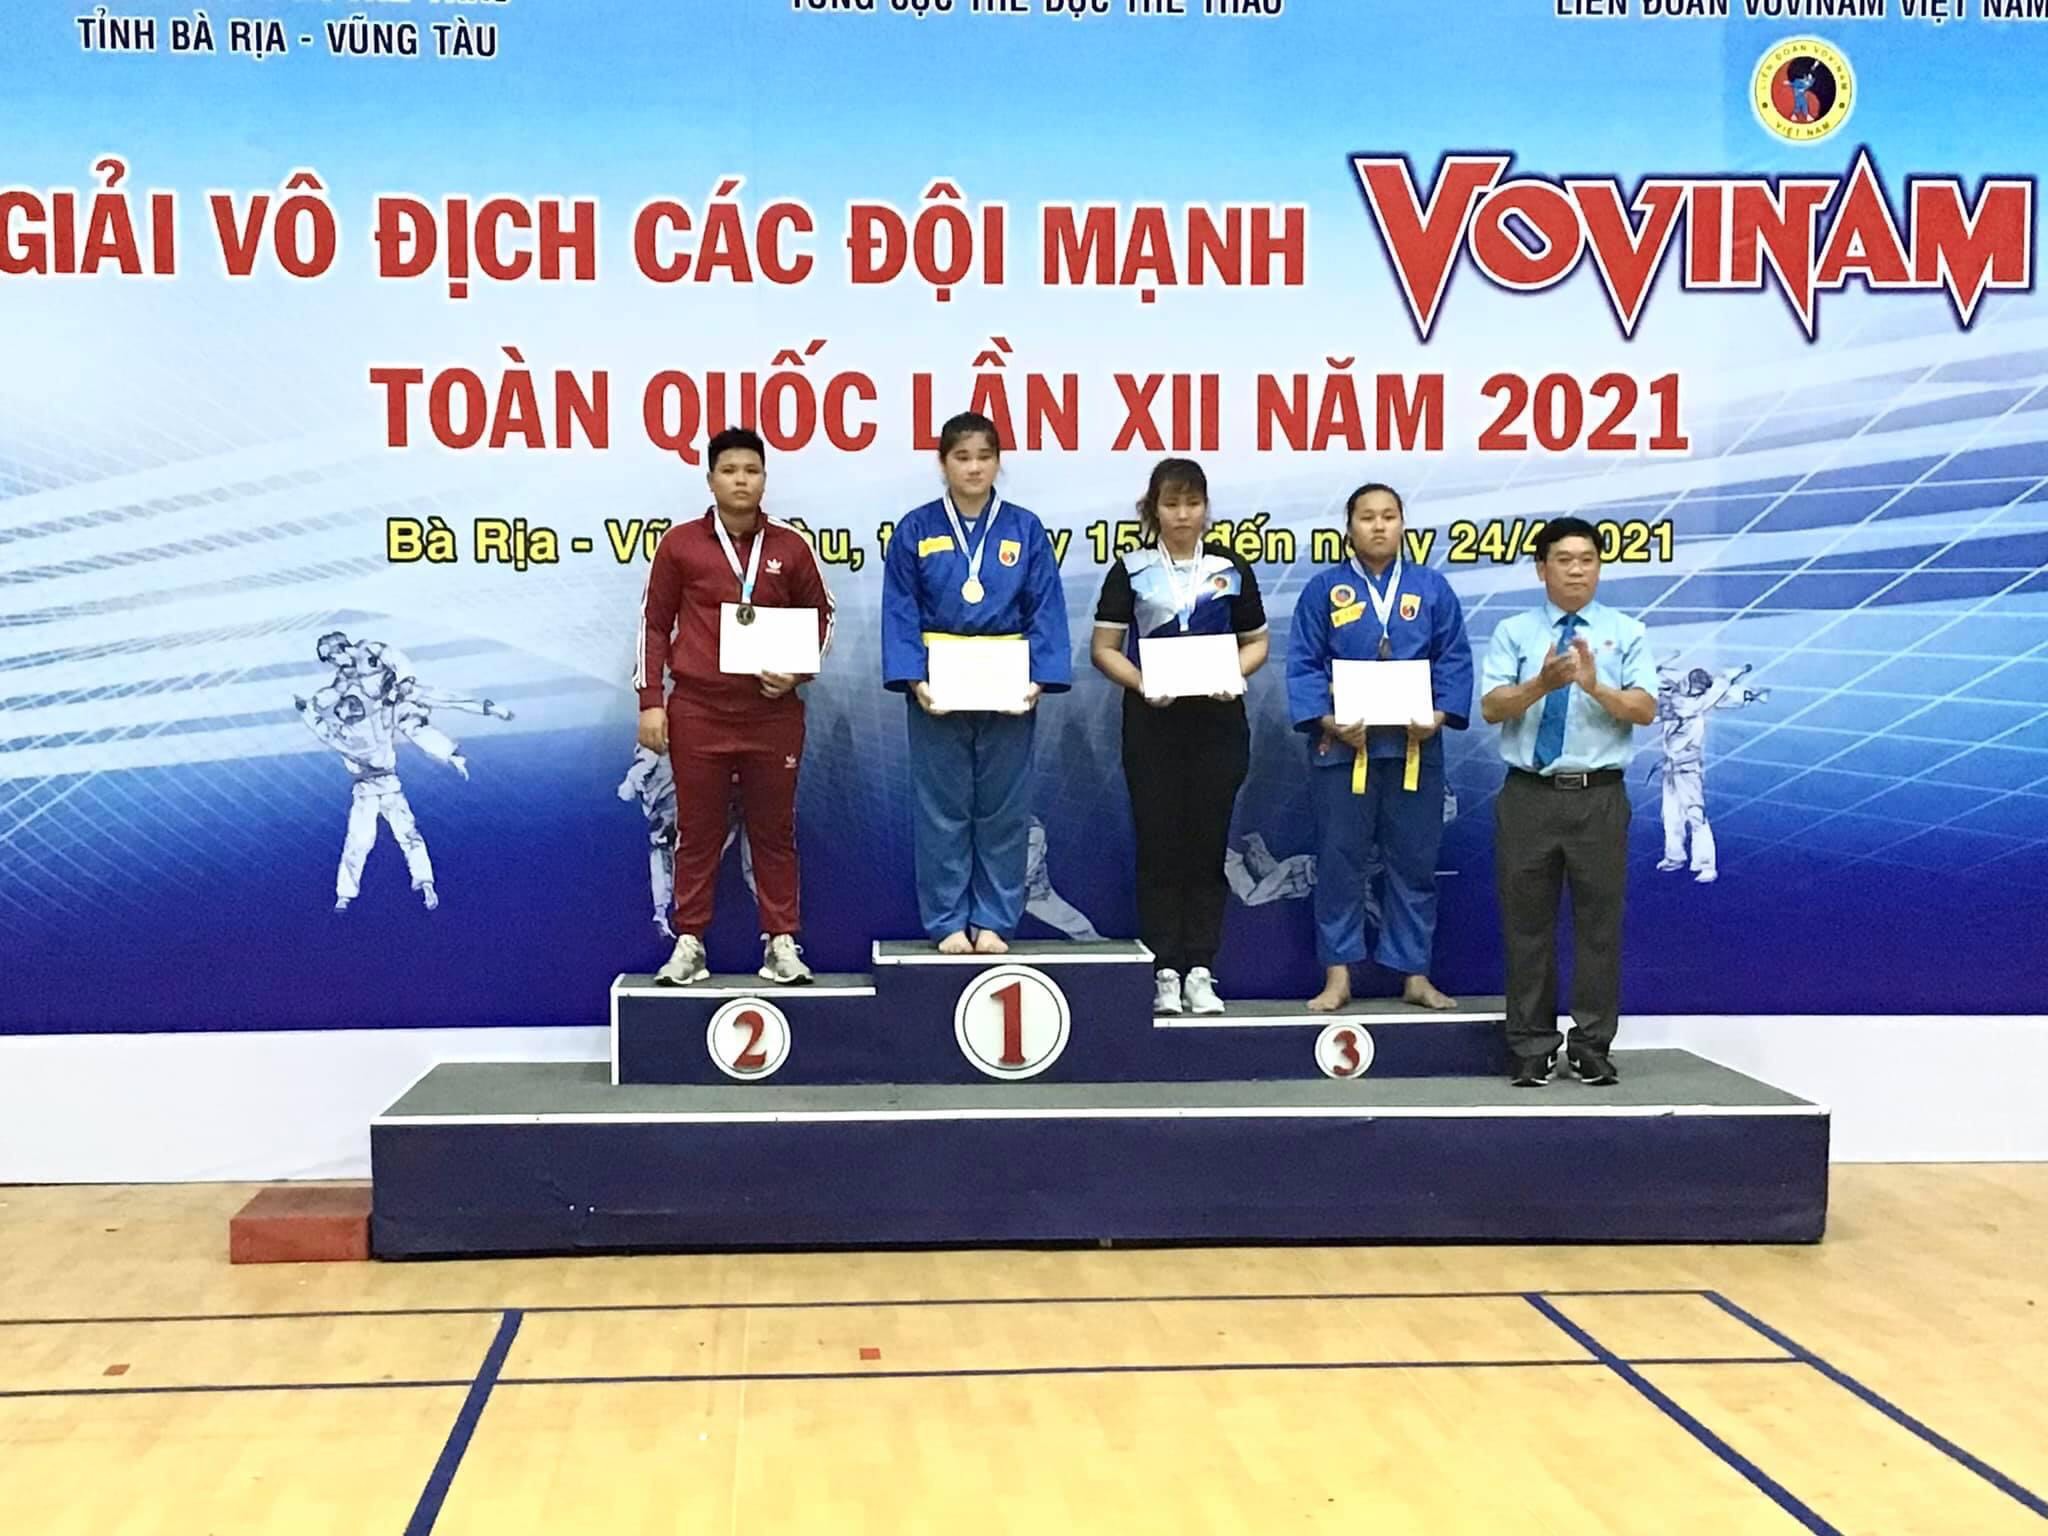 VĐV Lê Thị Hậu nhận HCB hạng cân trên 75kg nữ 